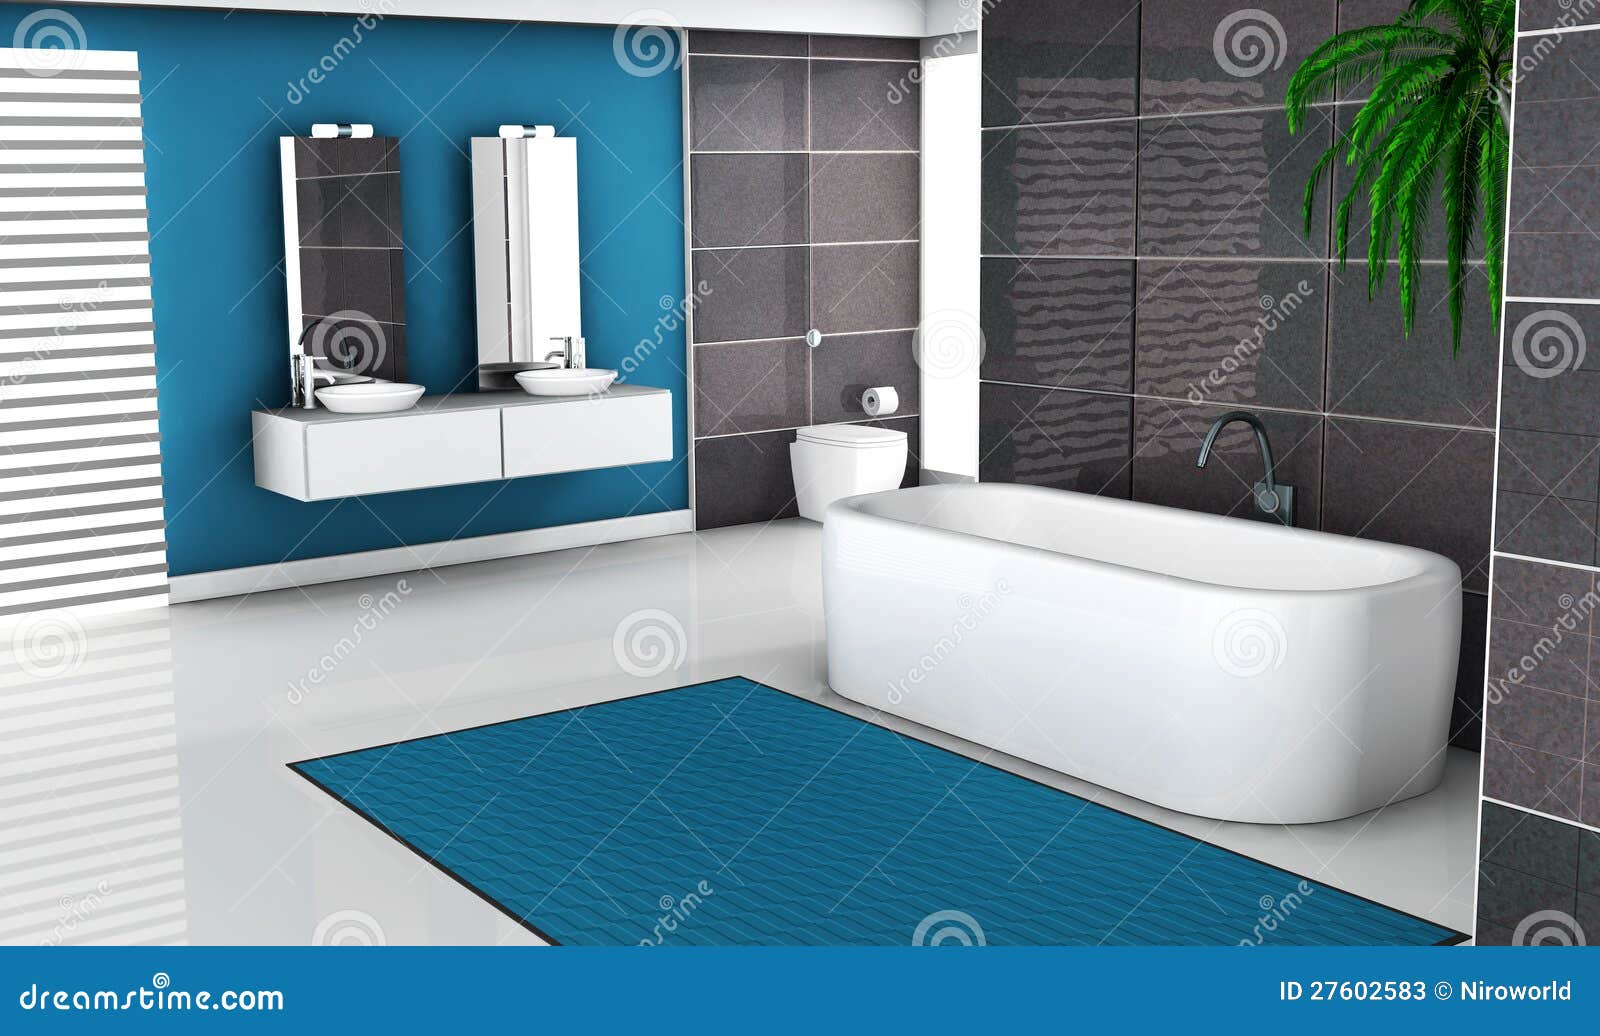 Modernes blaues Badezimmer stock abbildung. Illustration von haupt